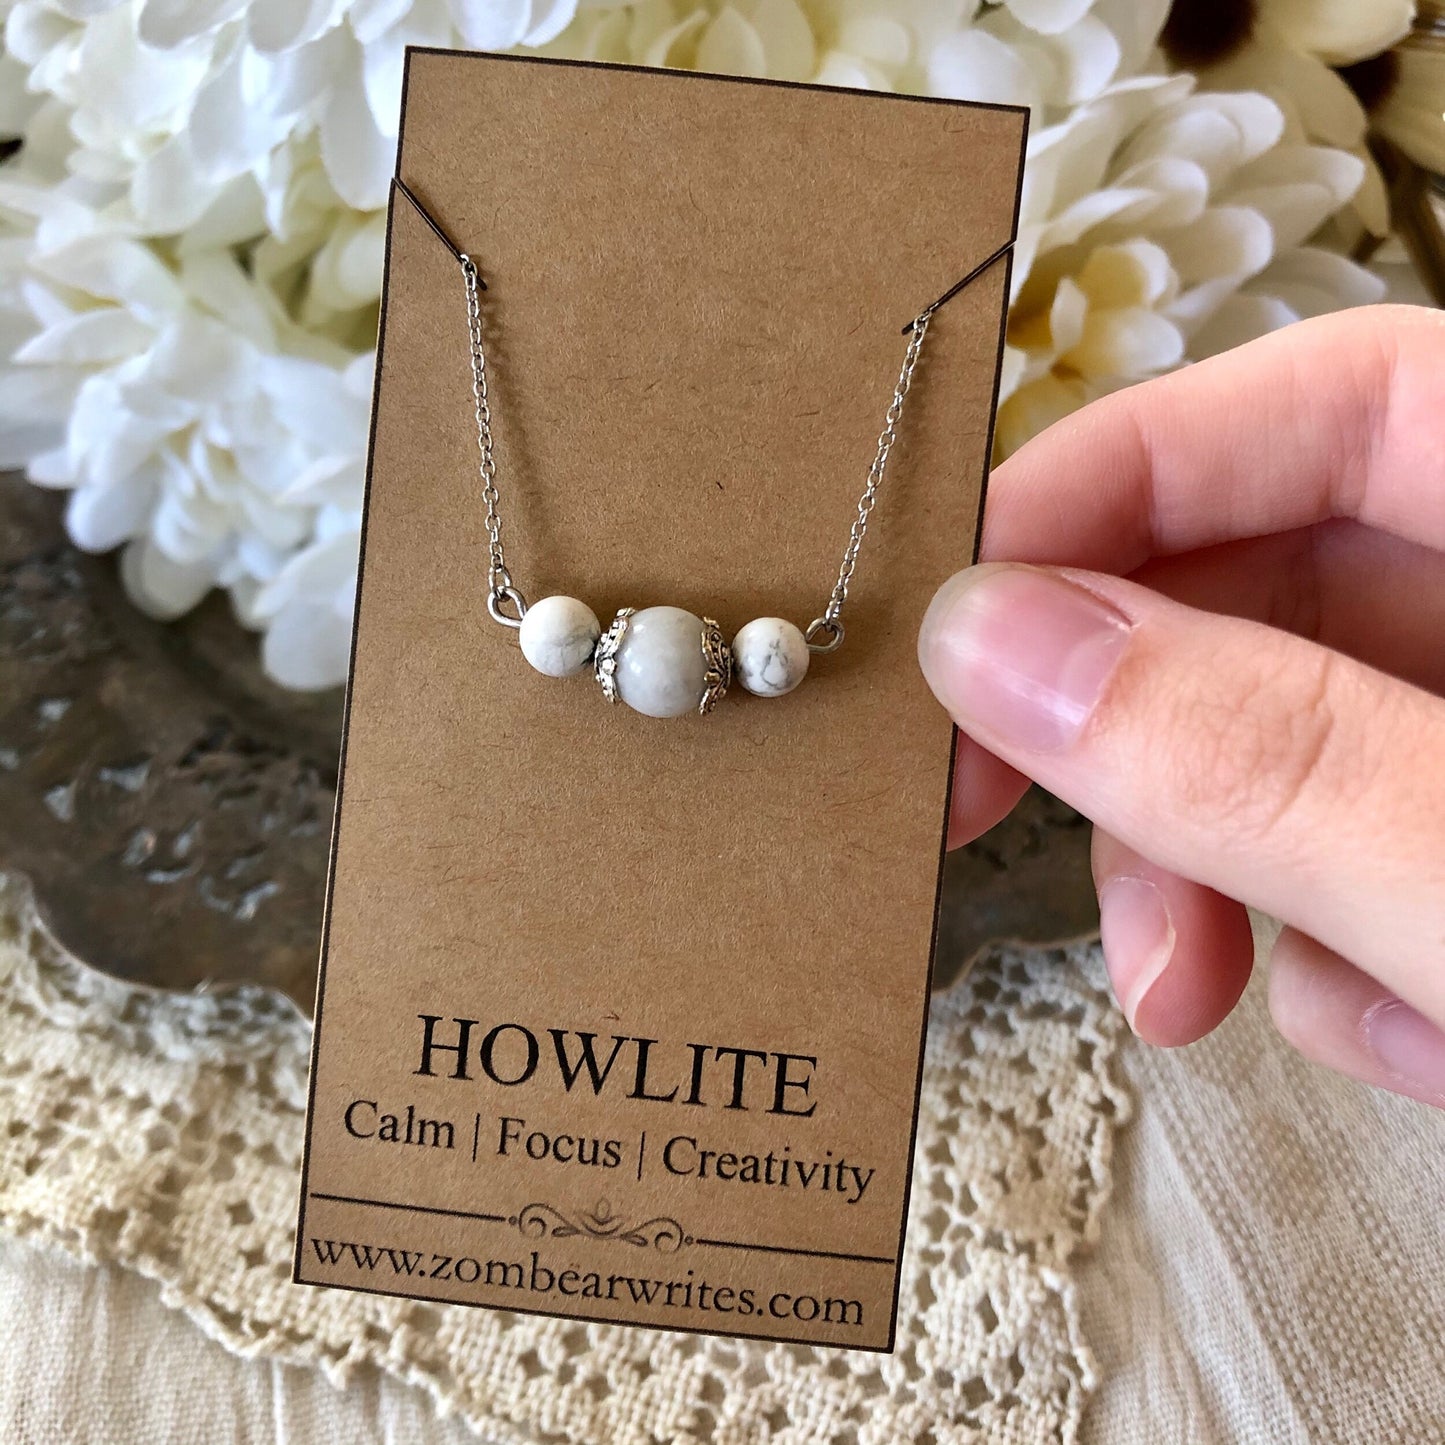 Howlite Natural Gemstone Necklace